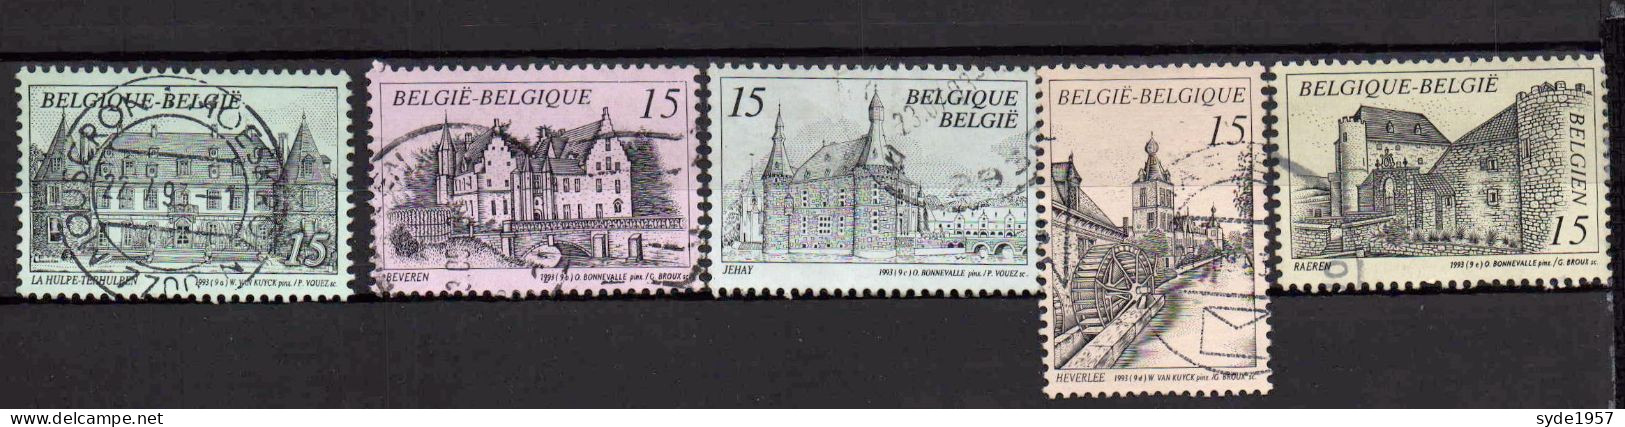 Belgique 1993  Tourisme, Châteaux - COB 2512 à 2516 (complet) Oblitérés - Used Stamps